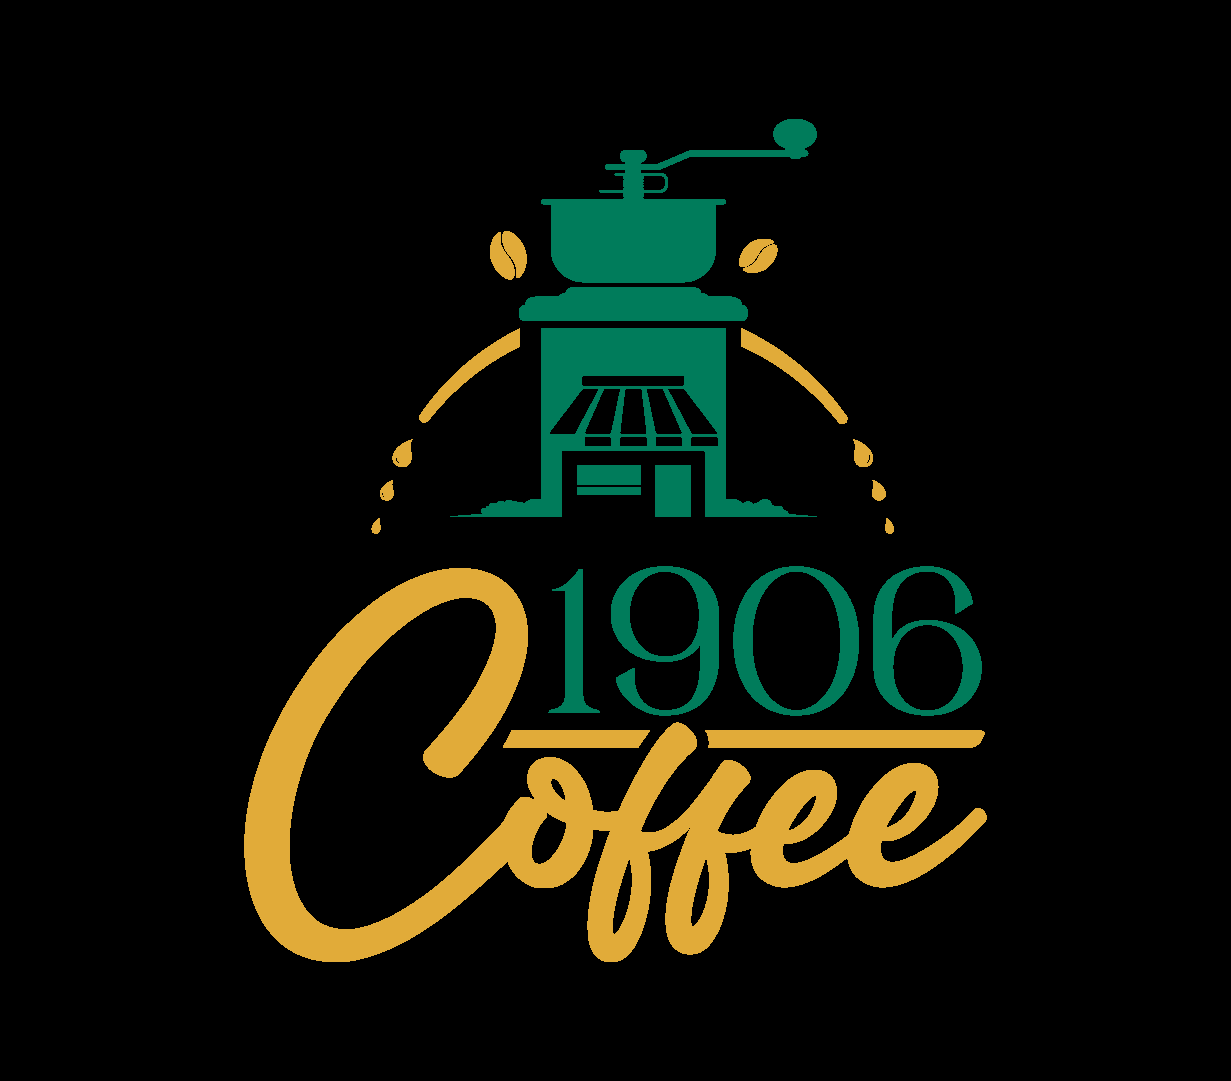 19 Zero 6 Cafe Logo